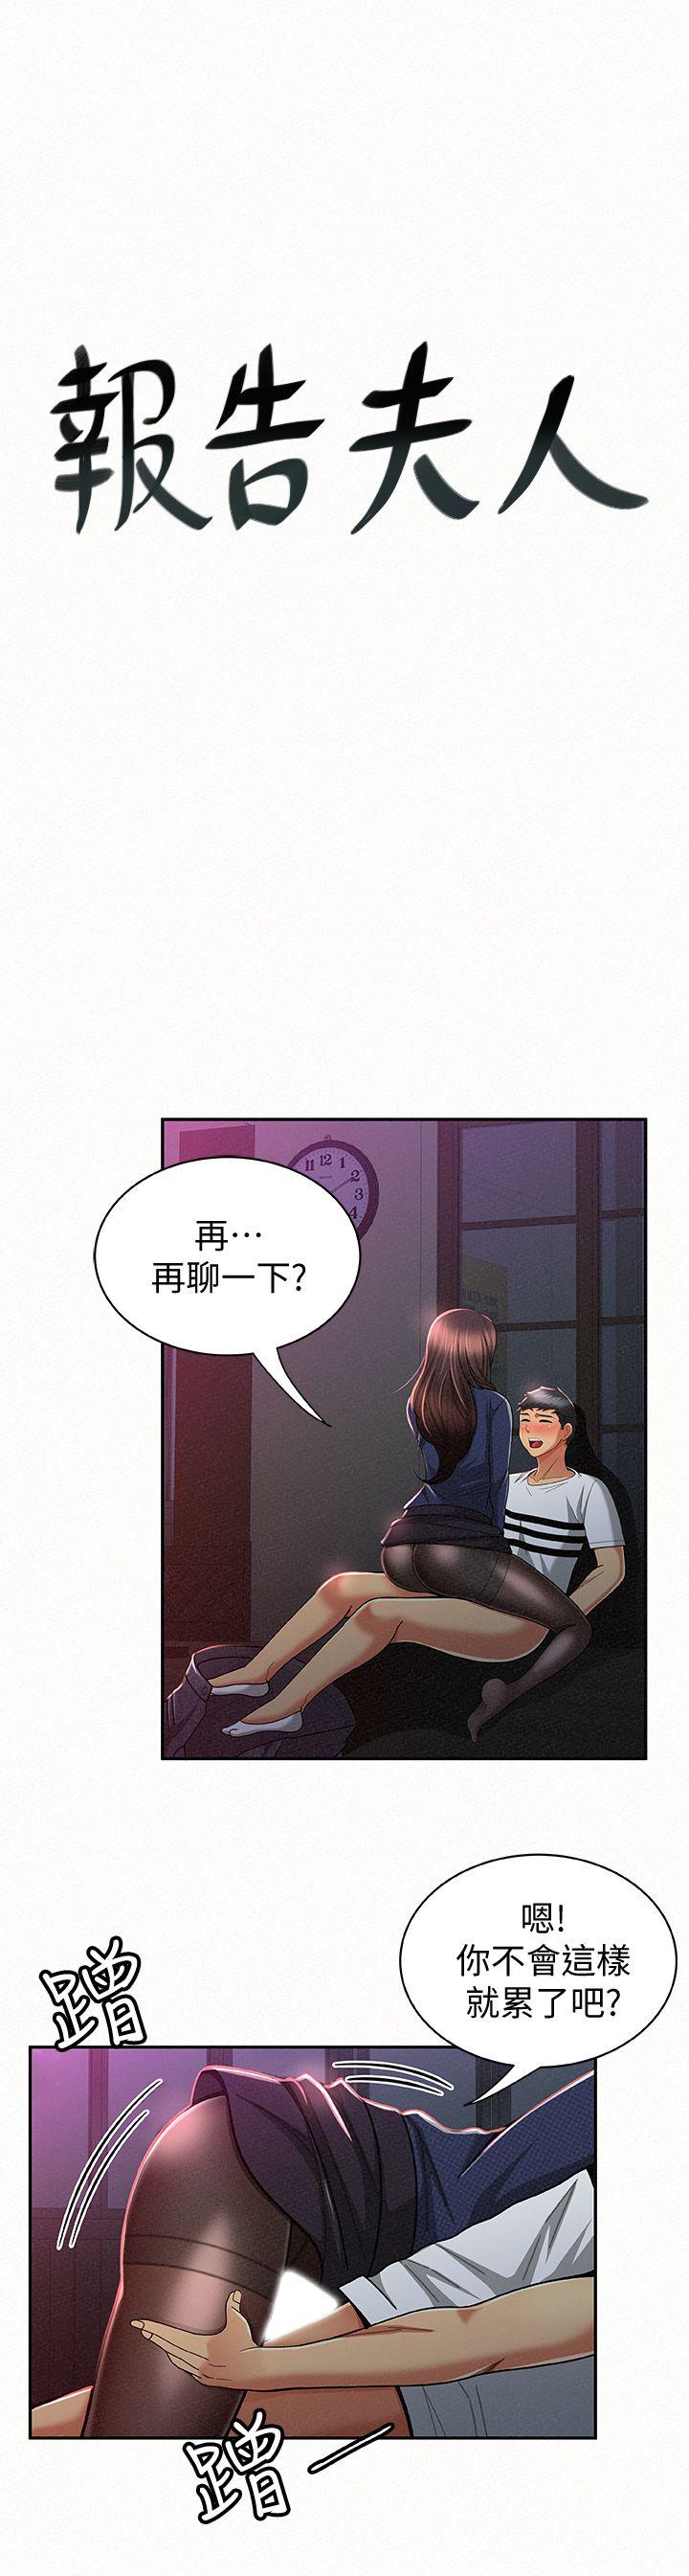 韩国污漫画 報告夫人 第20话-你跟仁惠进展到哪里了? 1